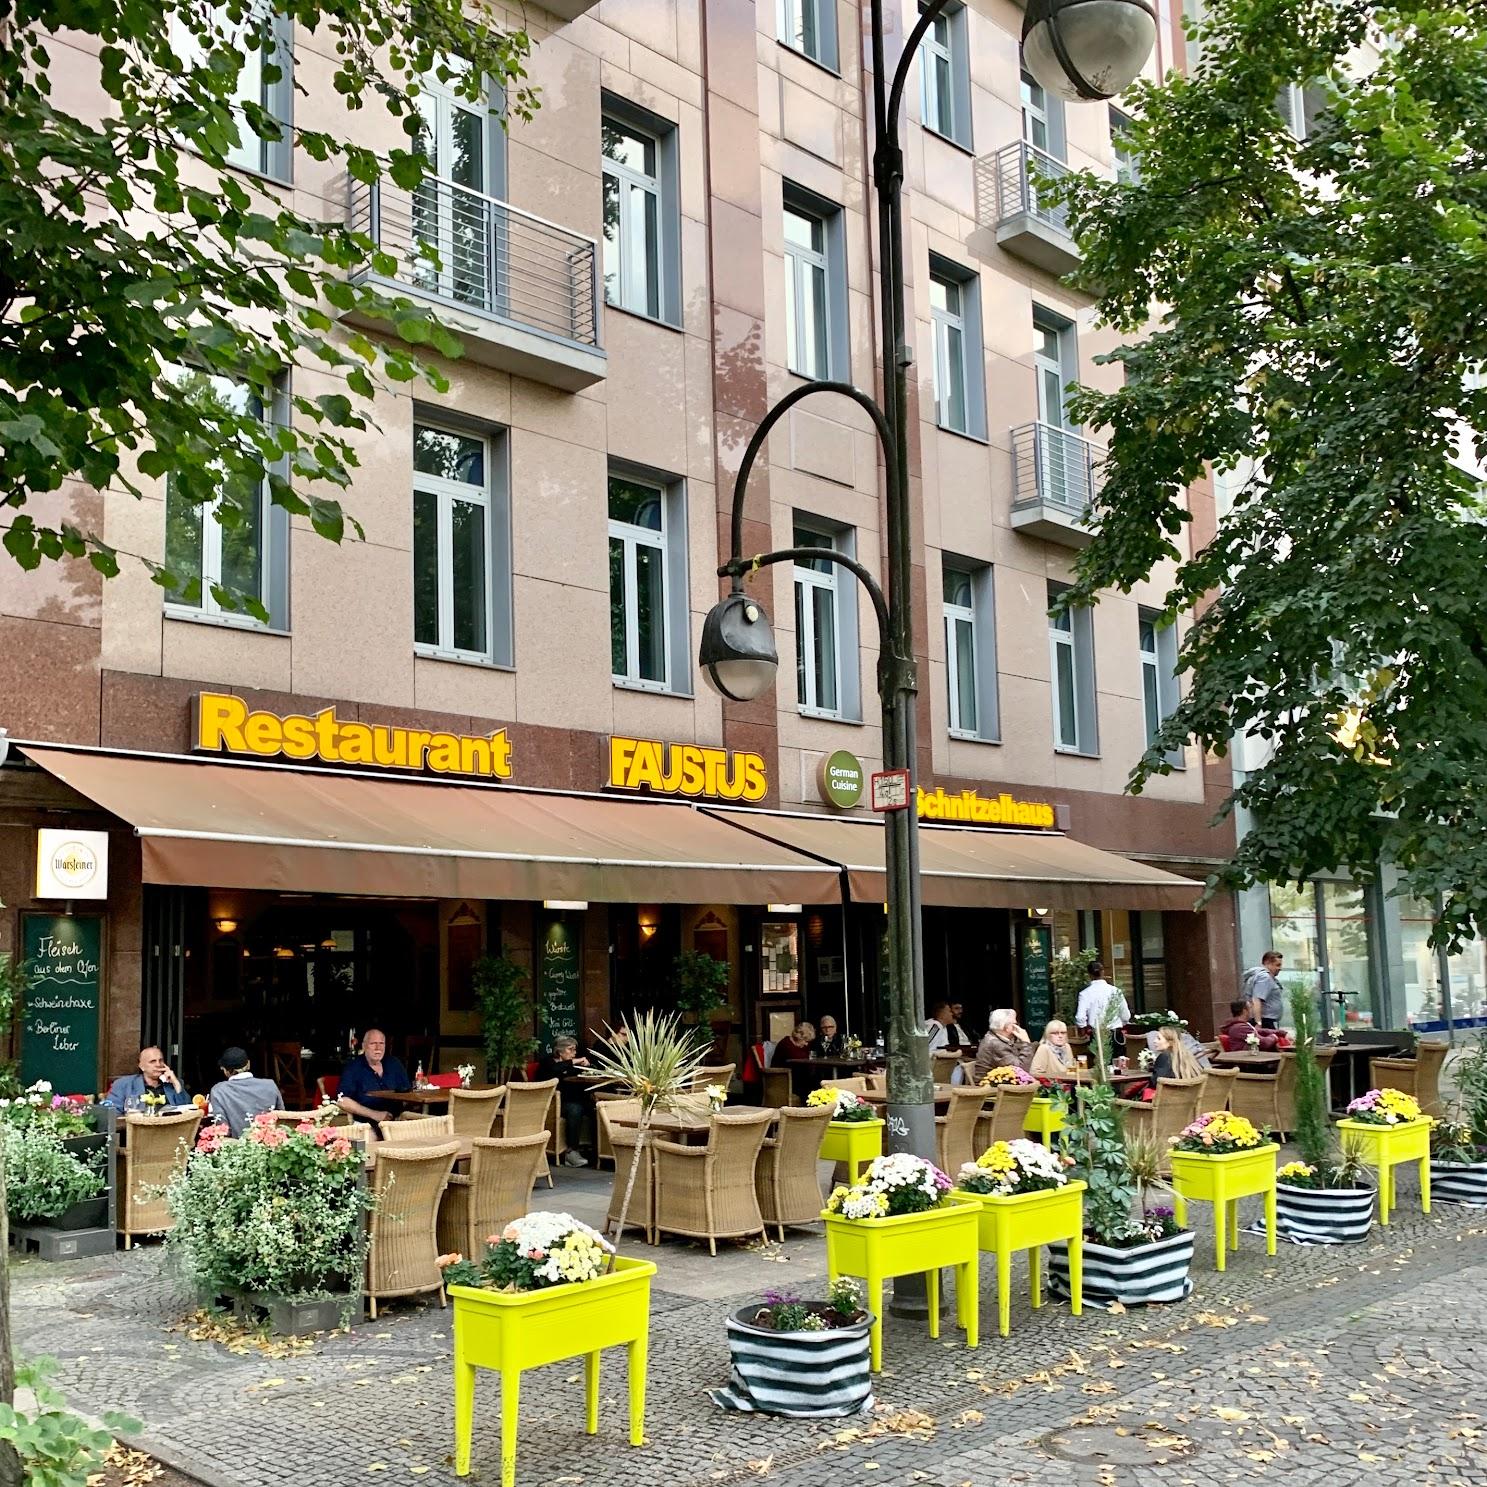 Restaurant "Faustus Schnitzelhaus" in Berlin